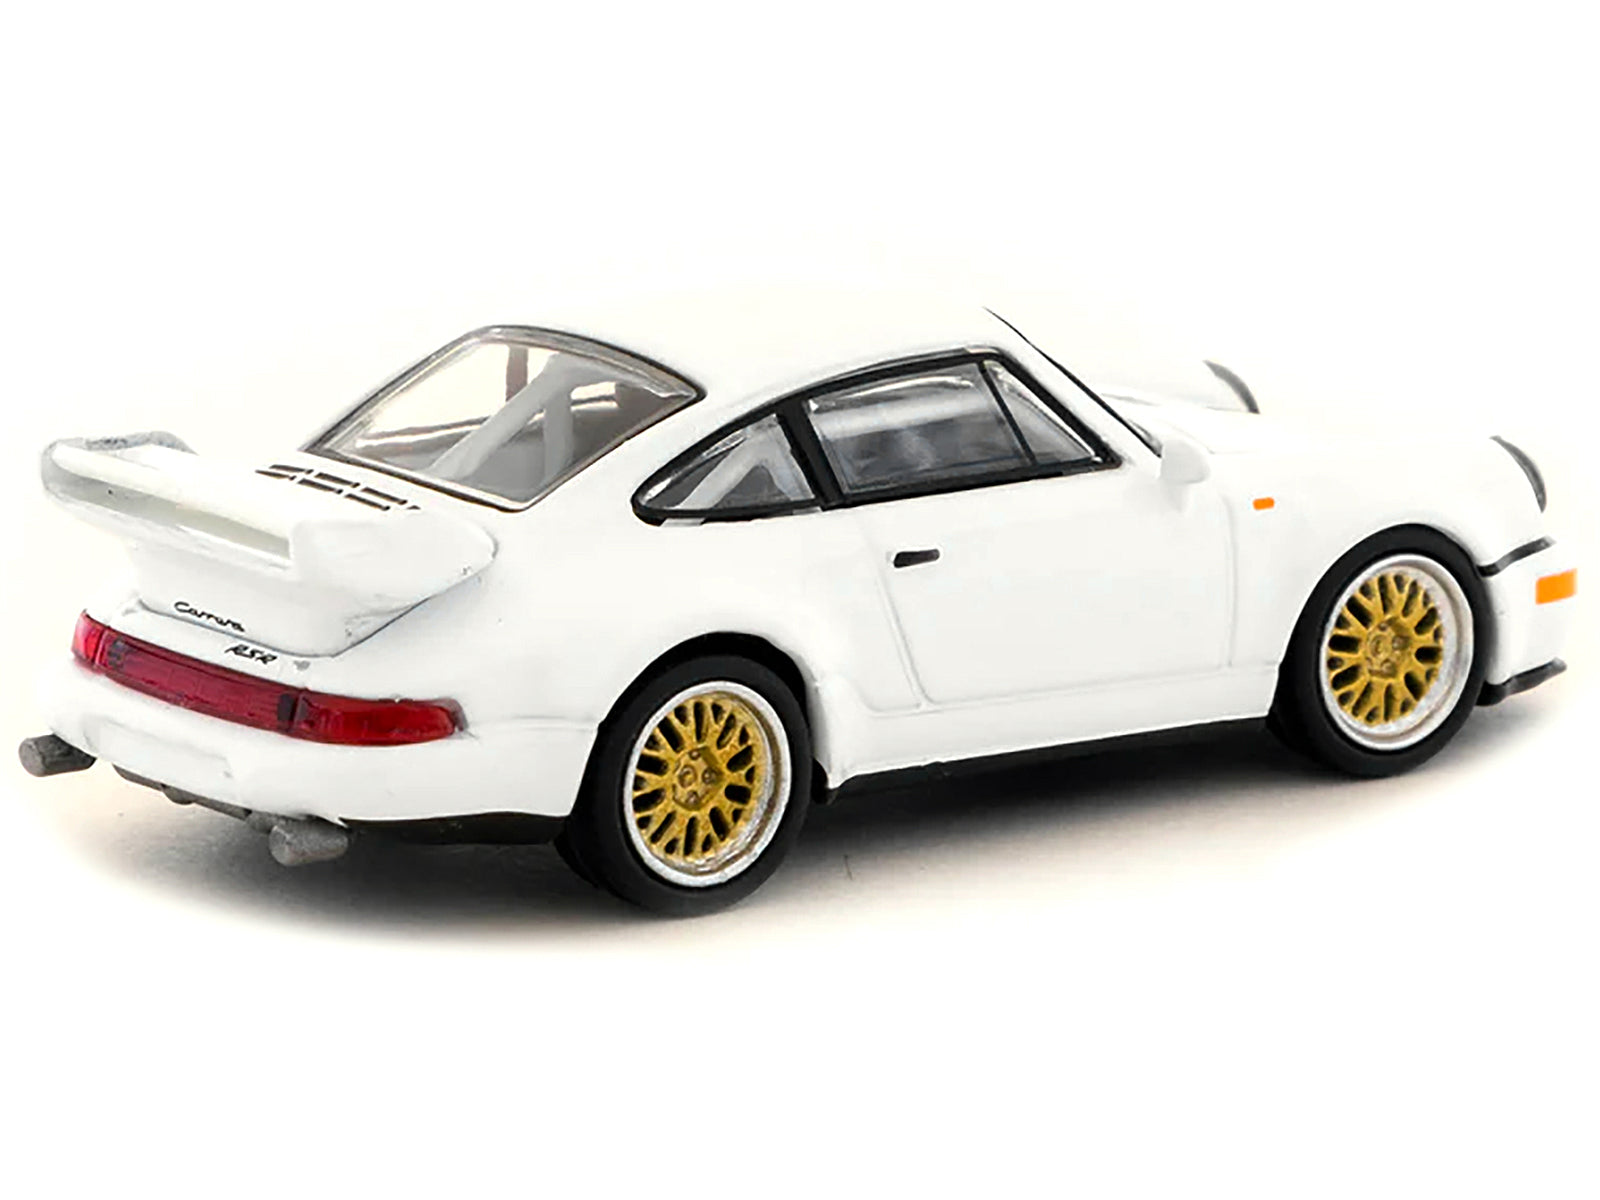 Porsche 911 RSR 3.8 White "Collab64" Series 1/64 Diecast Model Car by Schuco & Tarmac Works